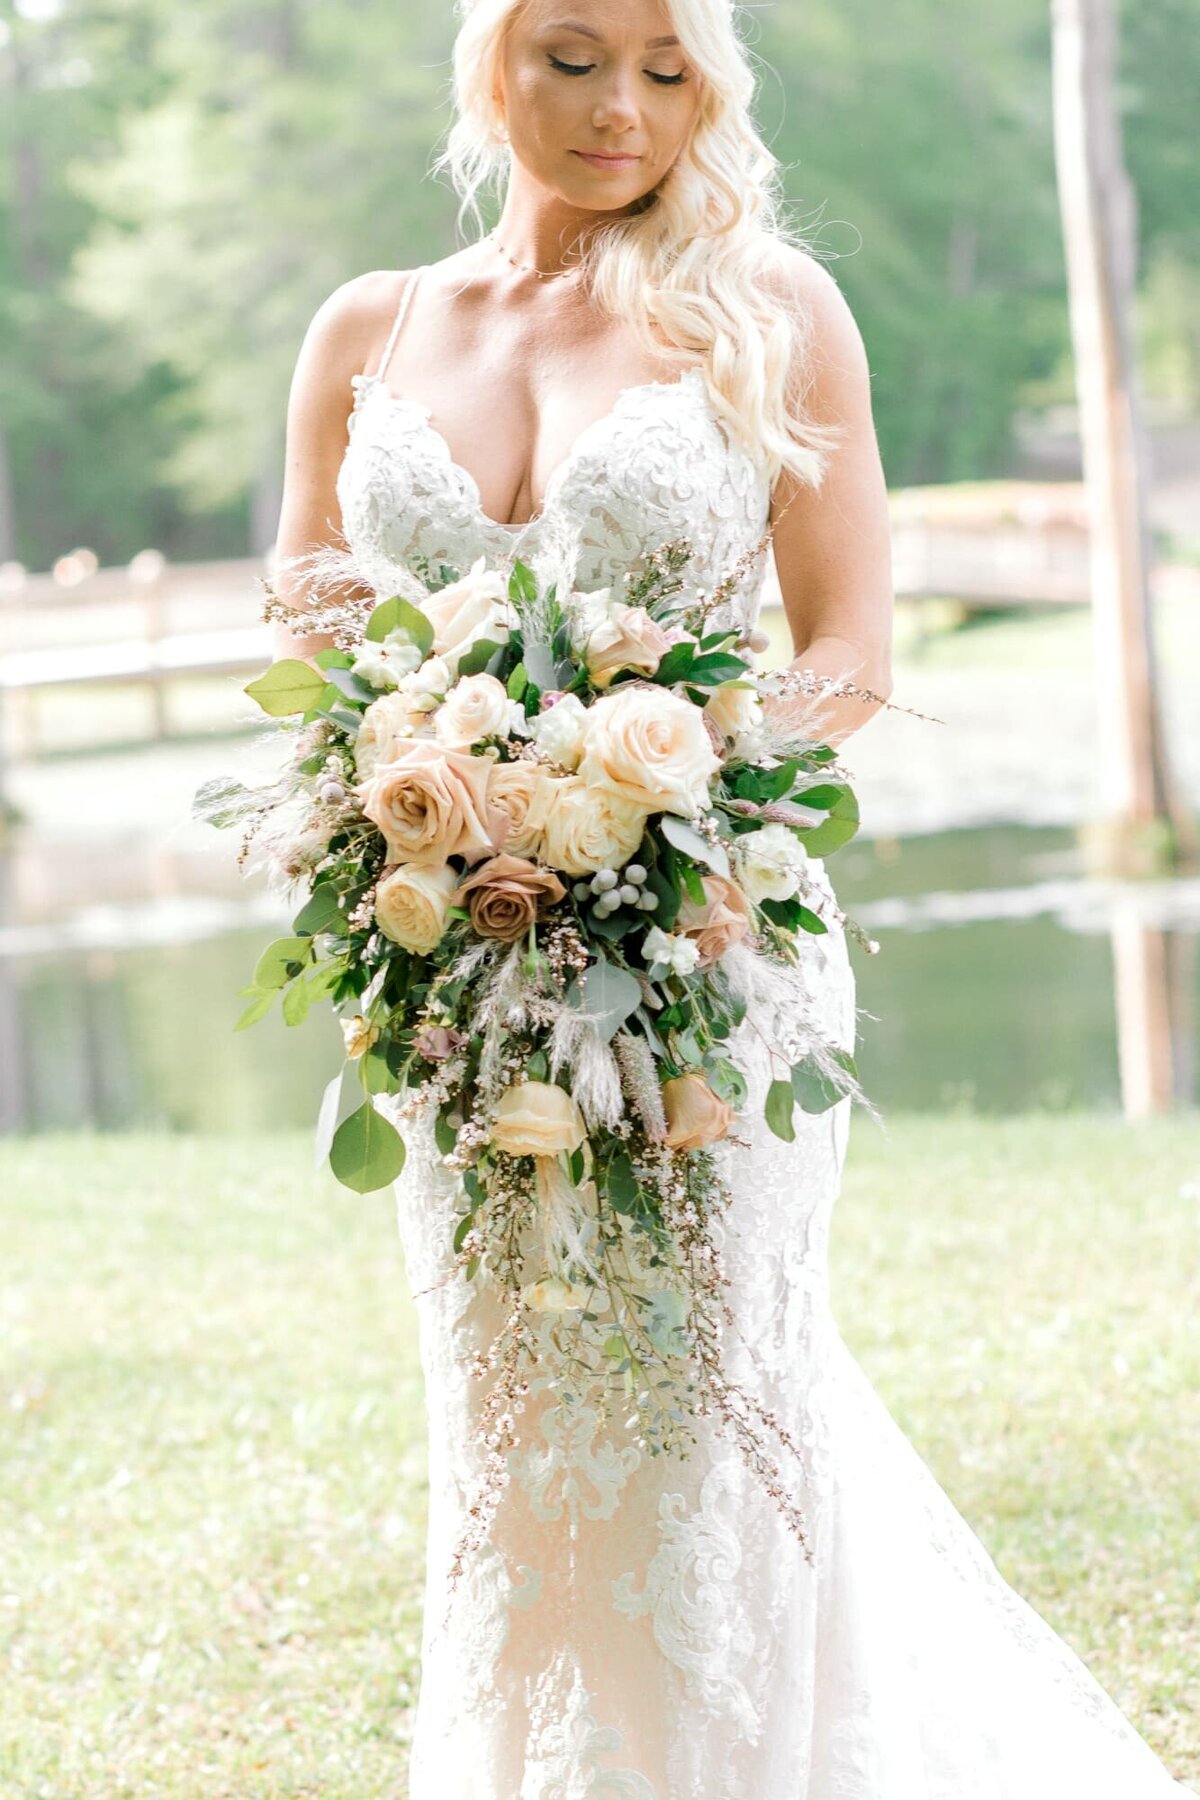 Bride holding romantic bouquet